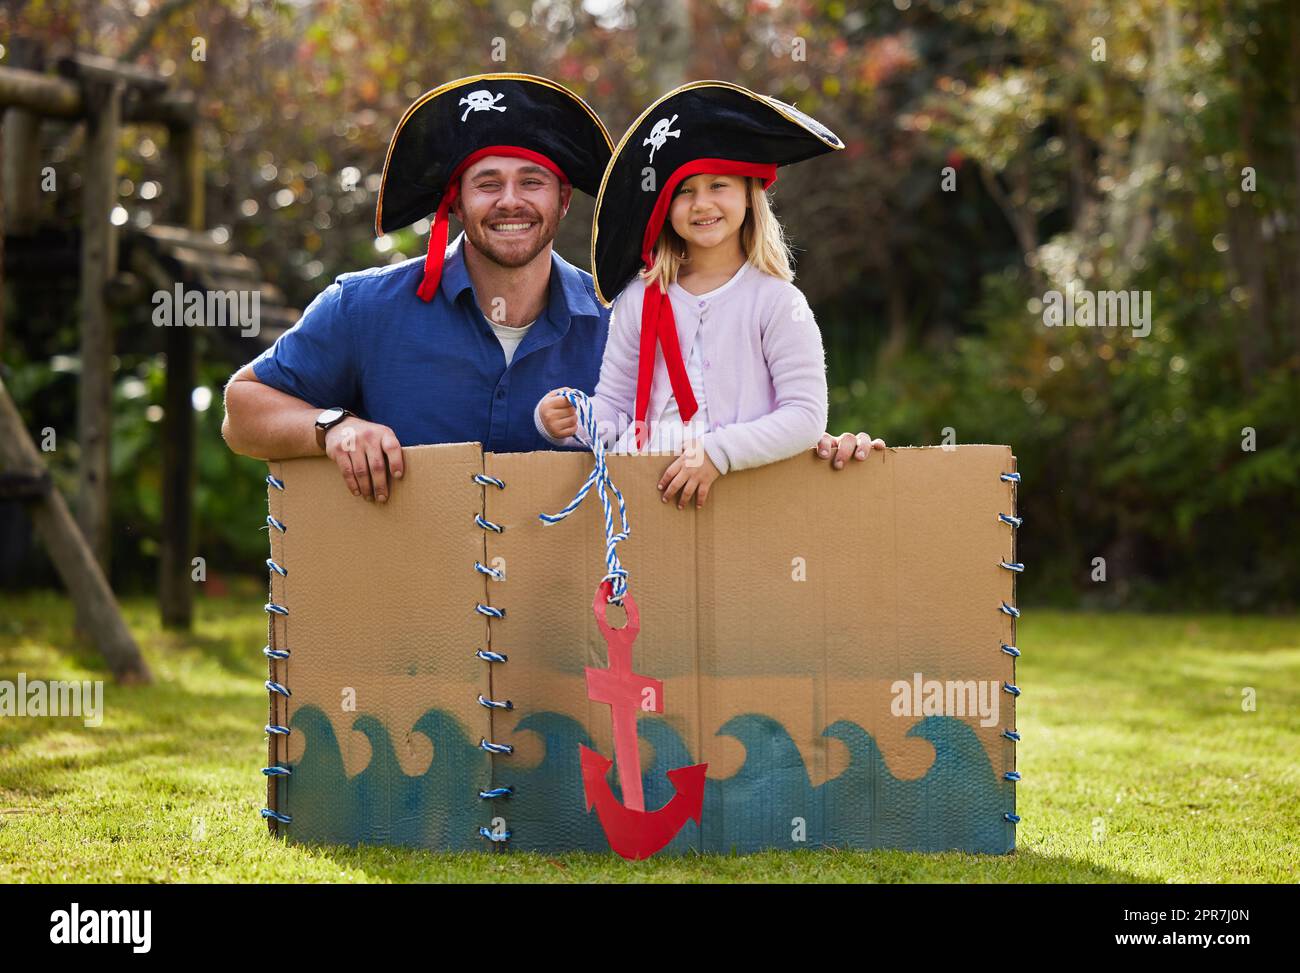 Lasst uns an Bord springen und sie in Stücke schneiden. Ein Vater und eine Tochter, die sich draußen im Hof wie Piraten verkleidet haben. Stockfoto